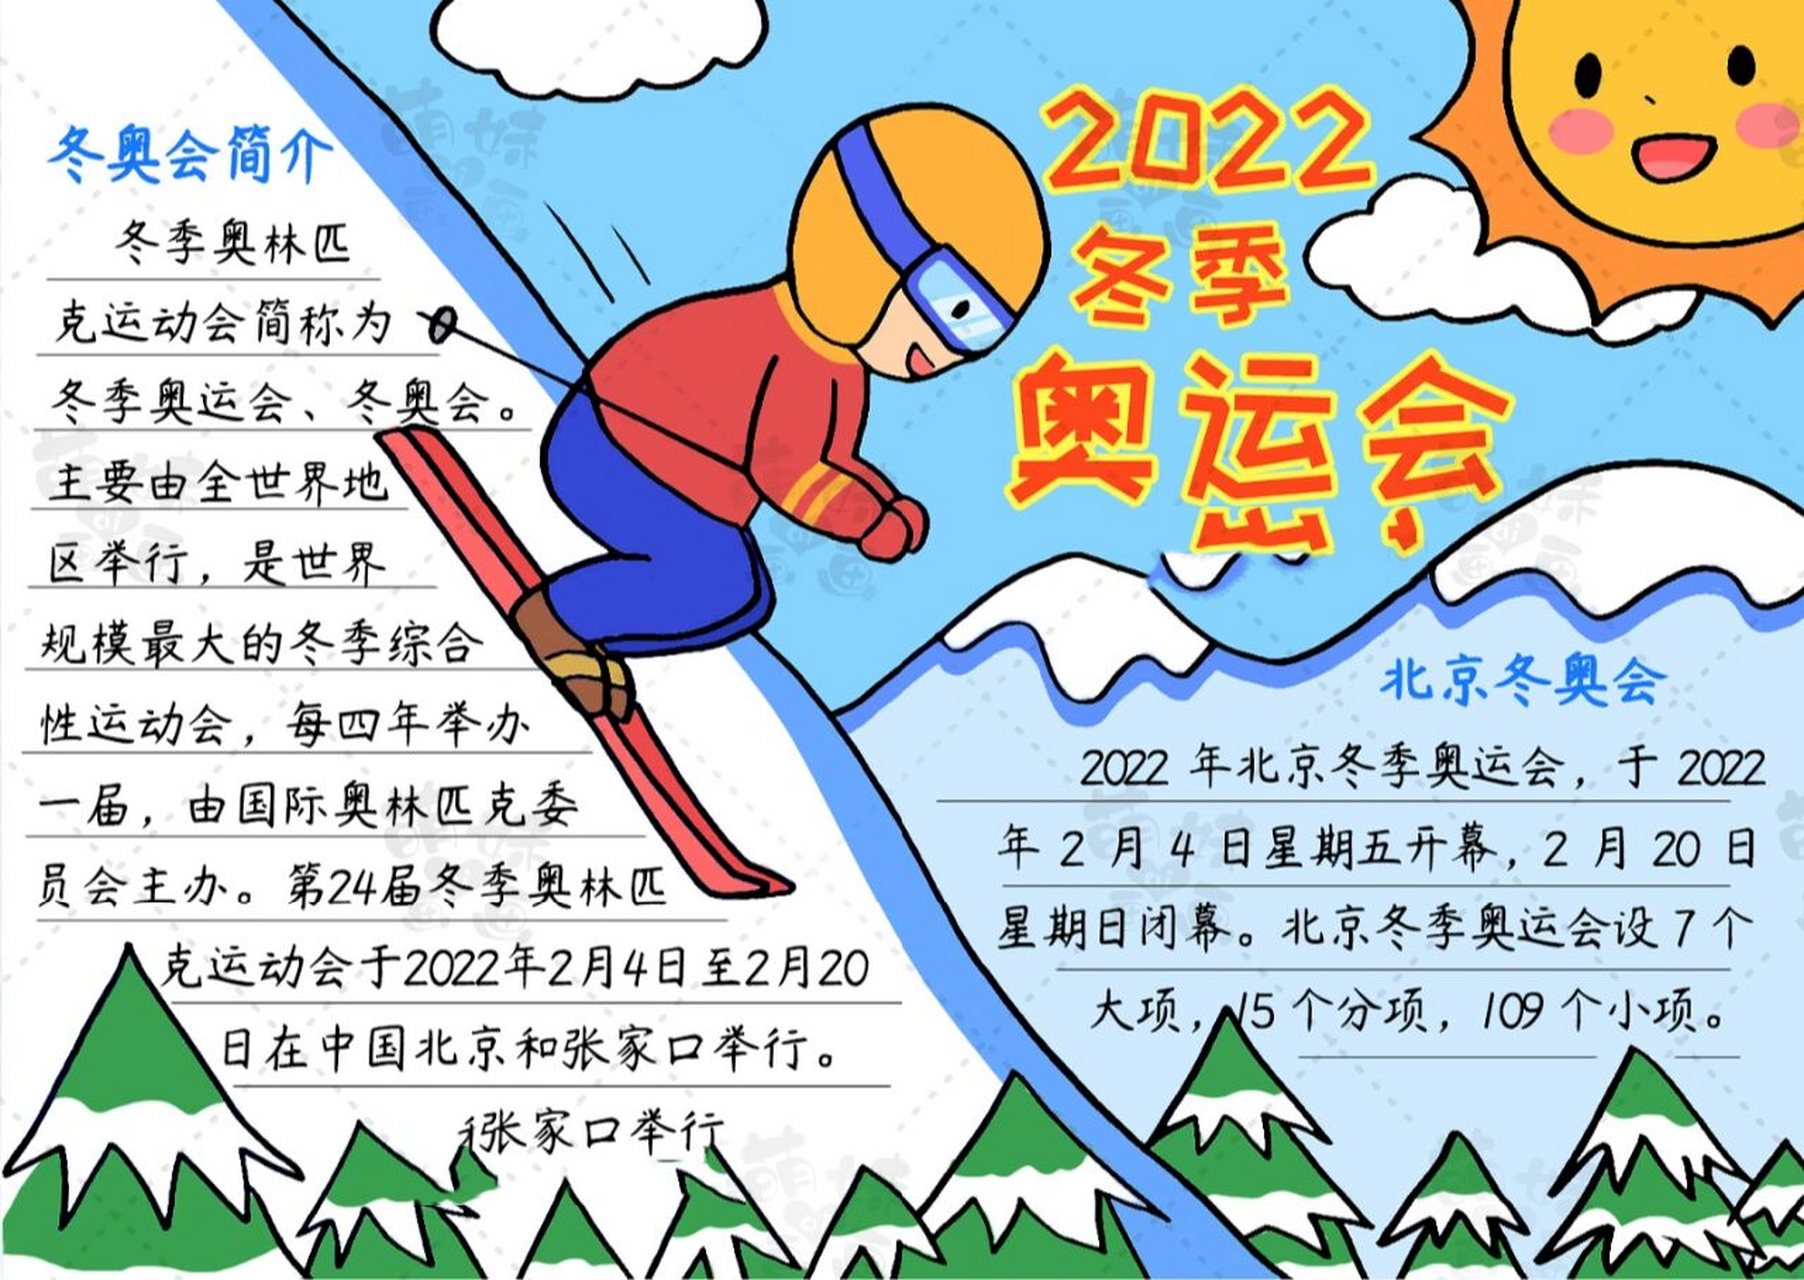 今天萌妹老师给大家带来两款简单漂亮的北京冬奥会手抄报模板,含文字